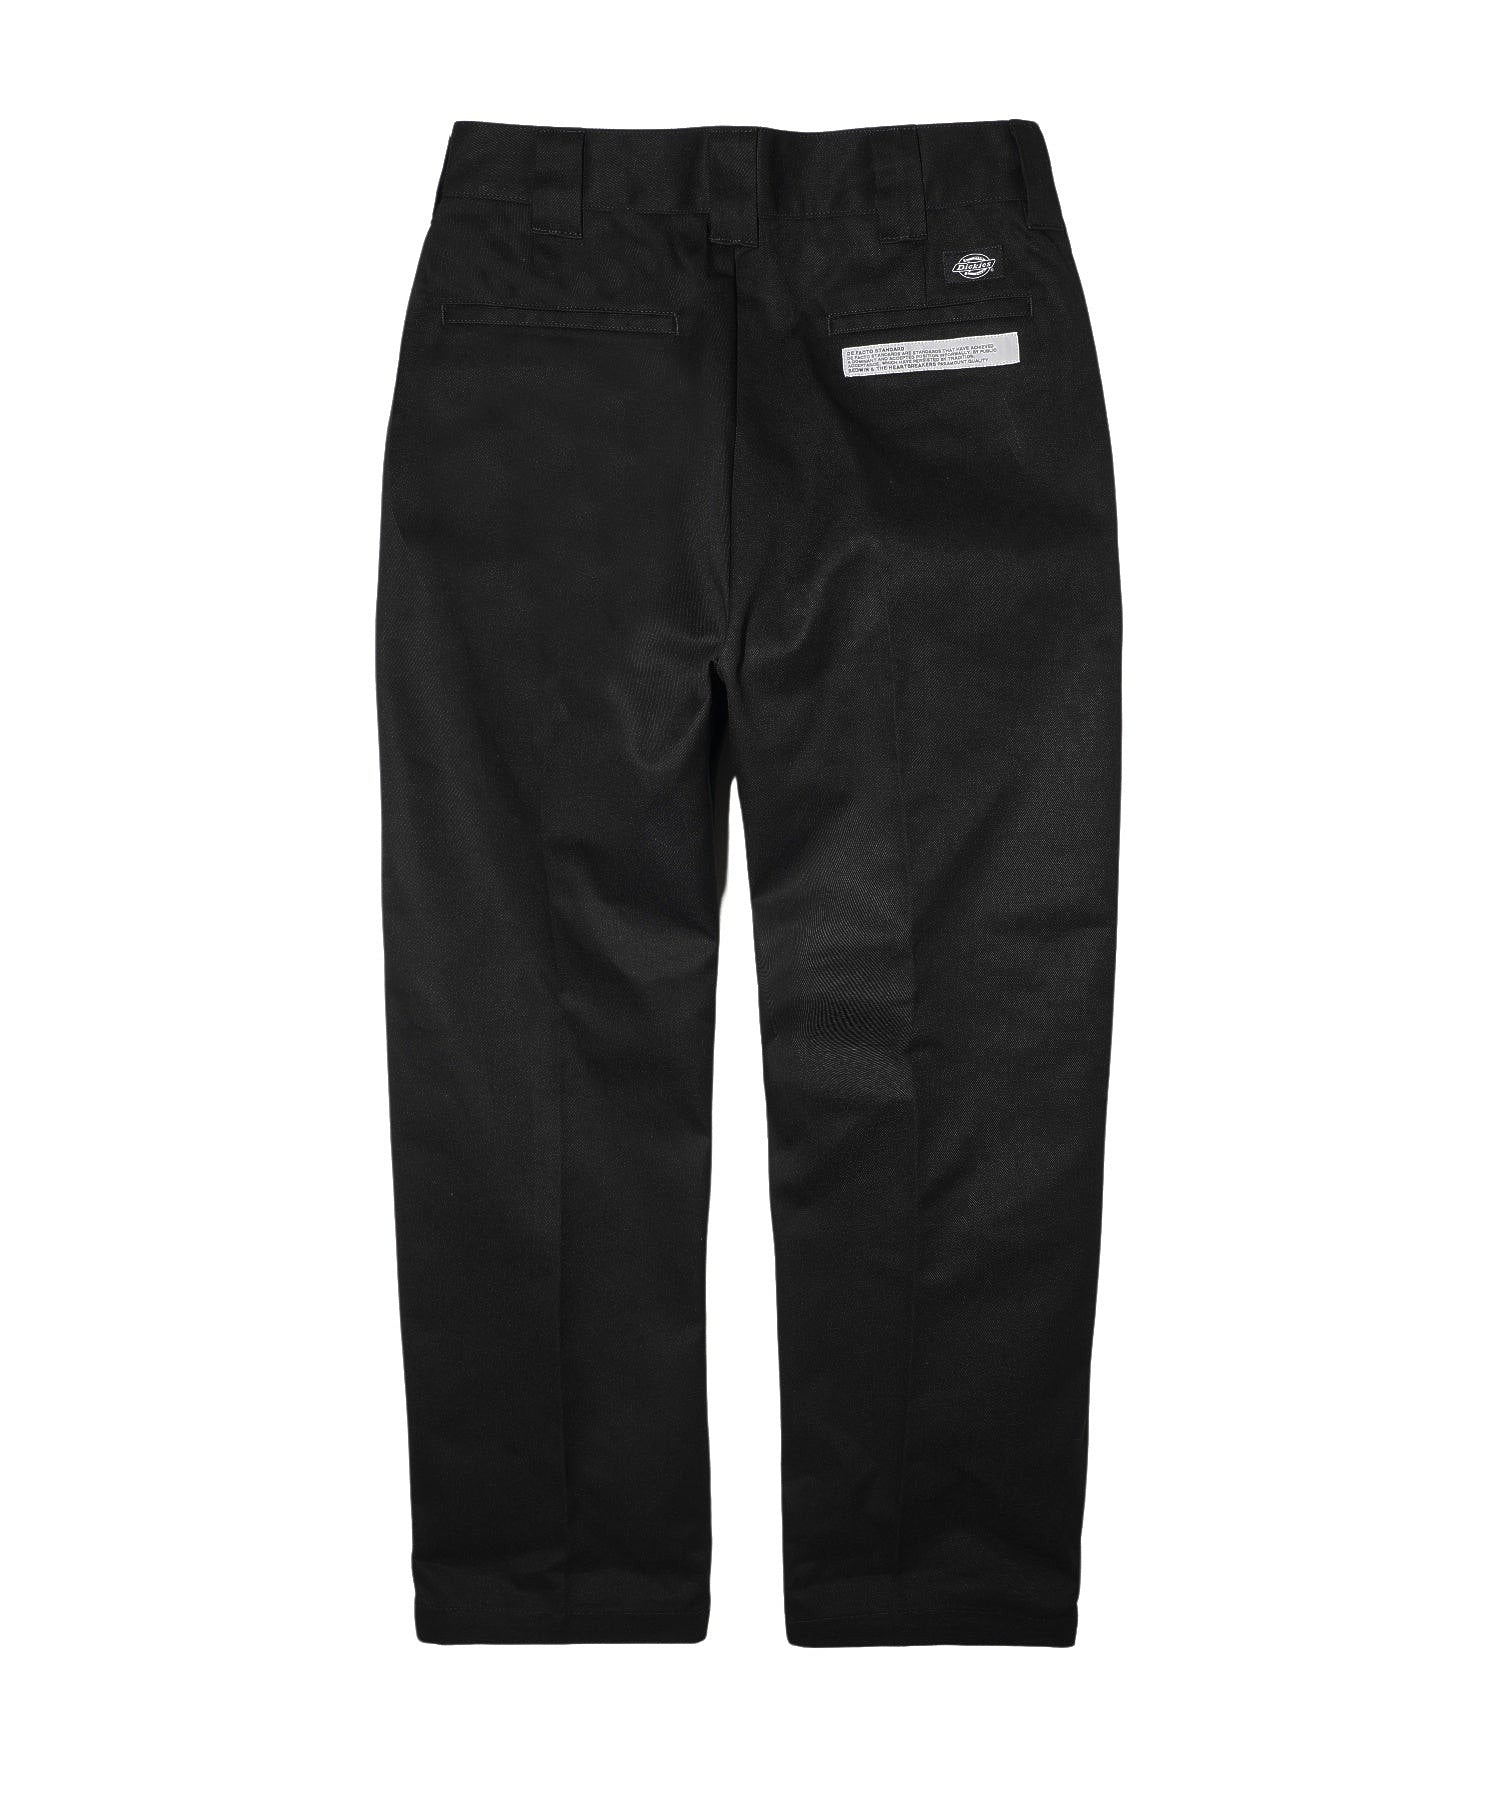 展示特価BEDWIN/ベドウィン/10L DICKIES SLIM FIT PANTS パンツ